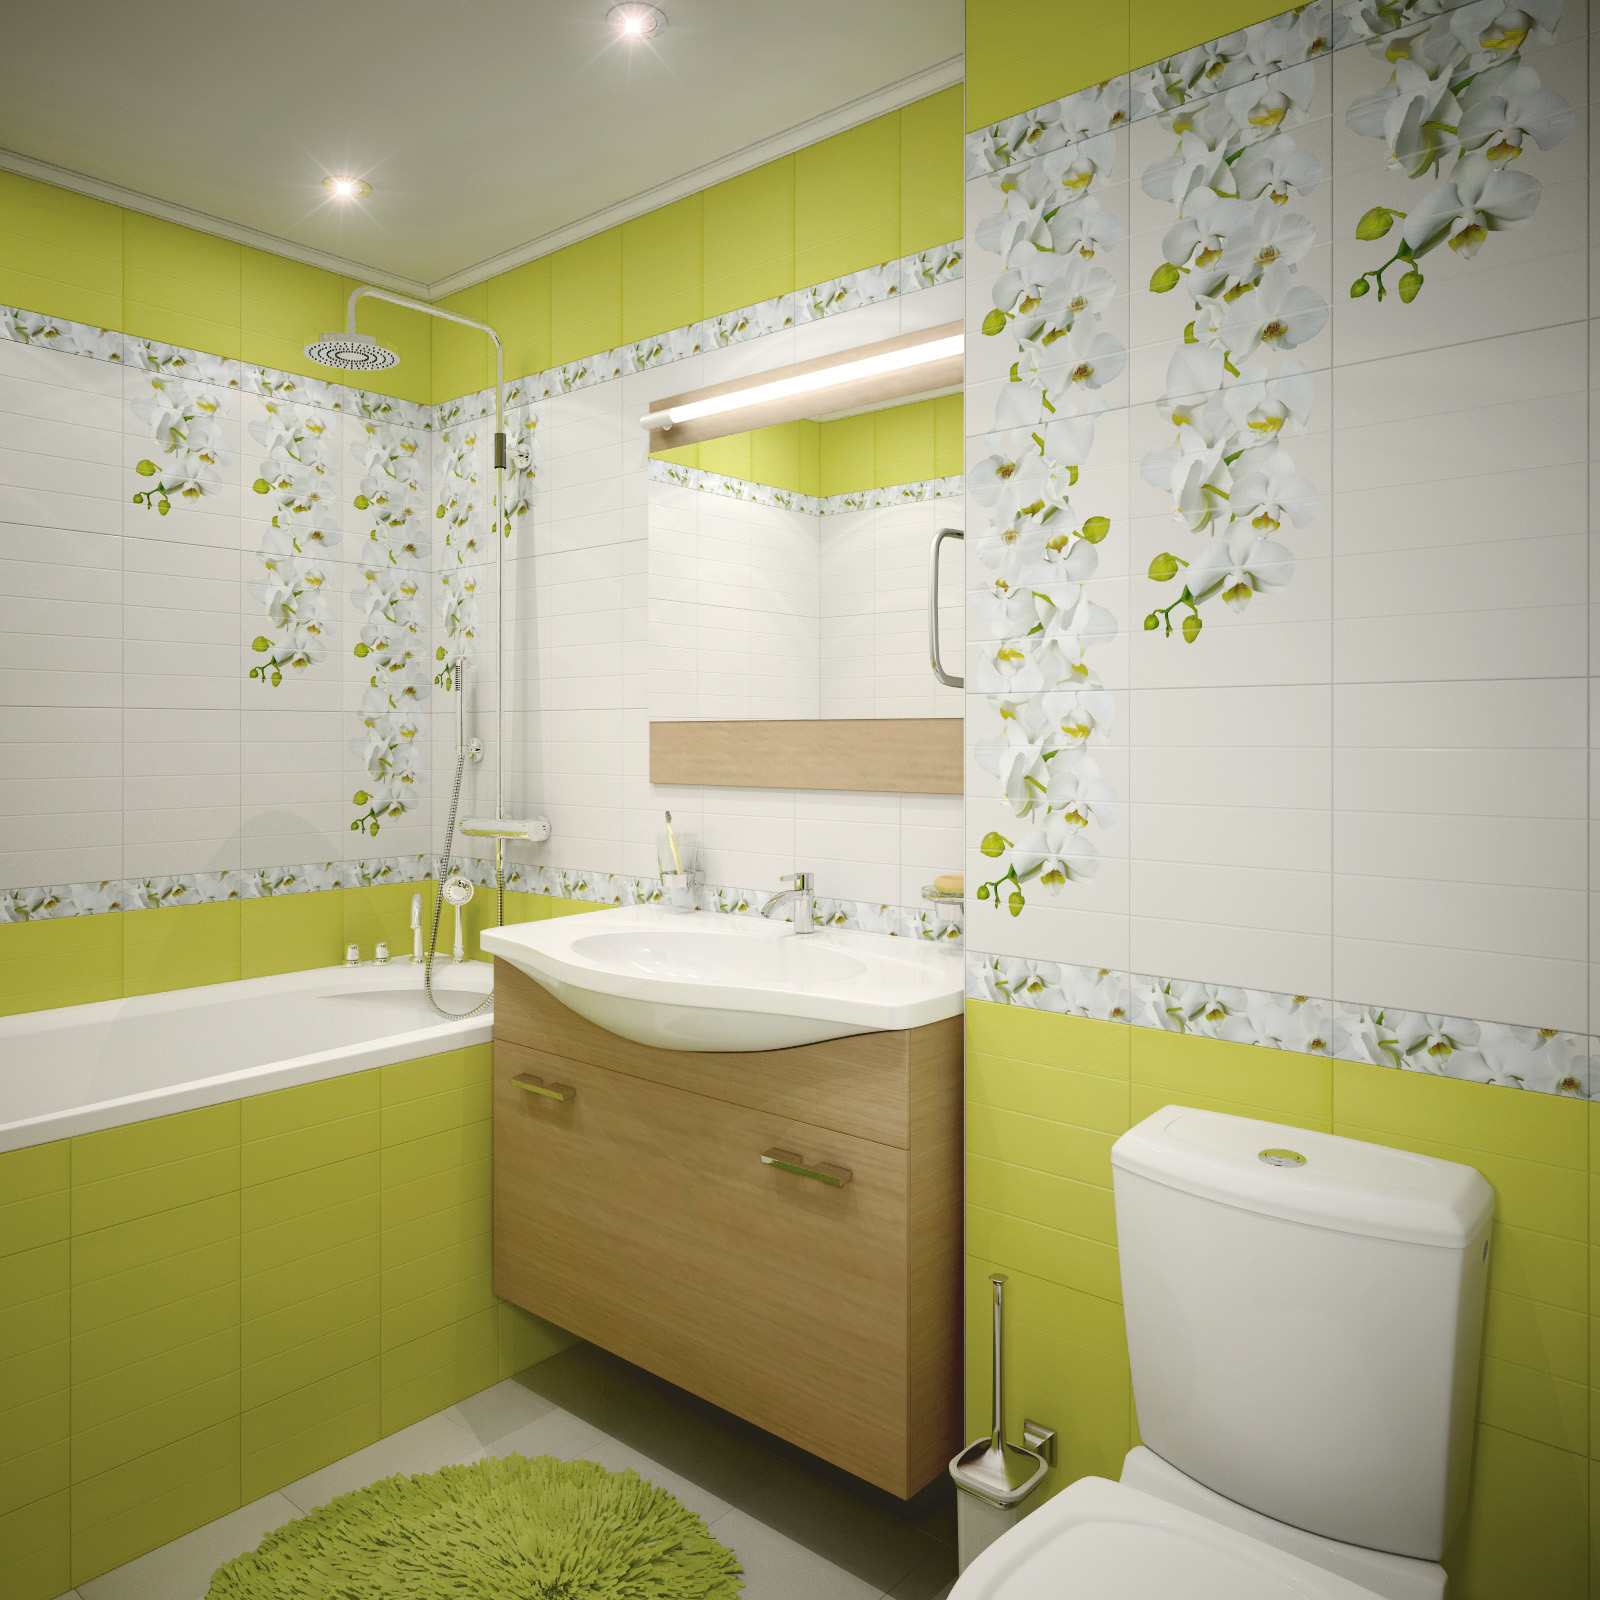 Кафельная плитка с рисунком цветов для ванной комнаты в зеленом цвете 